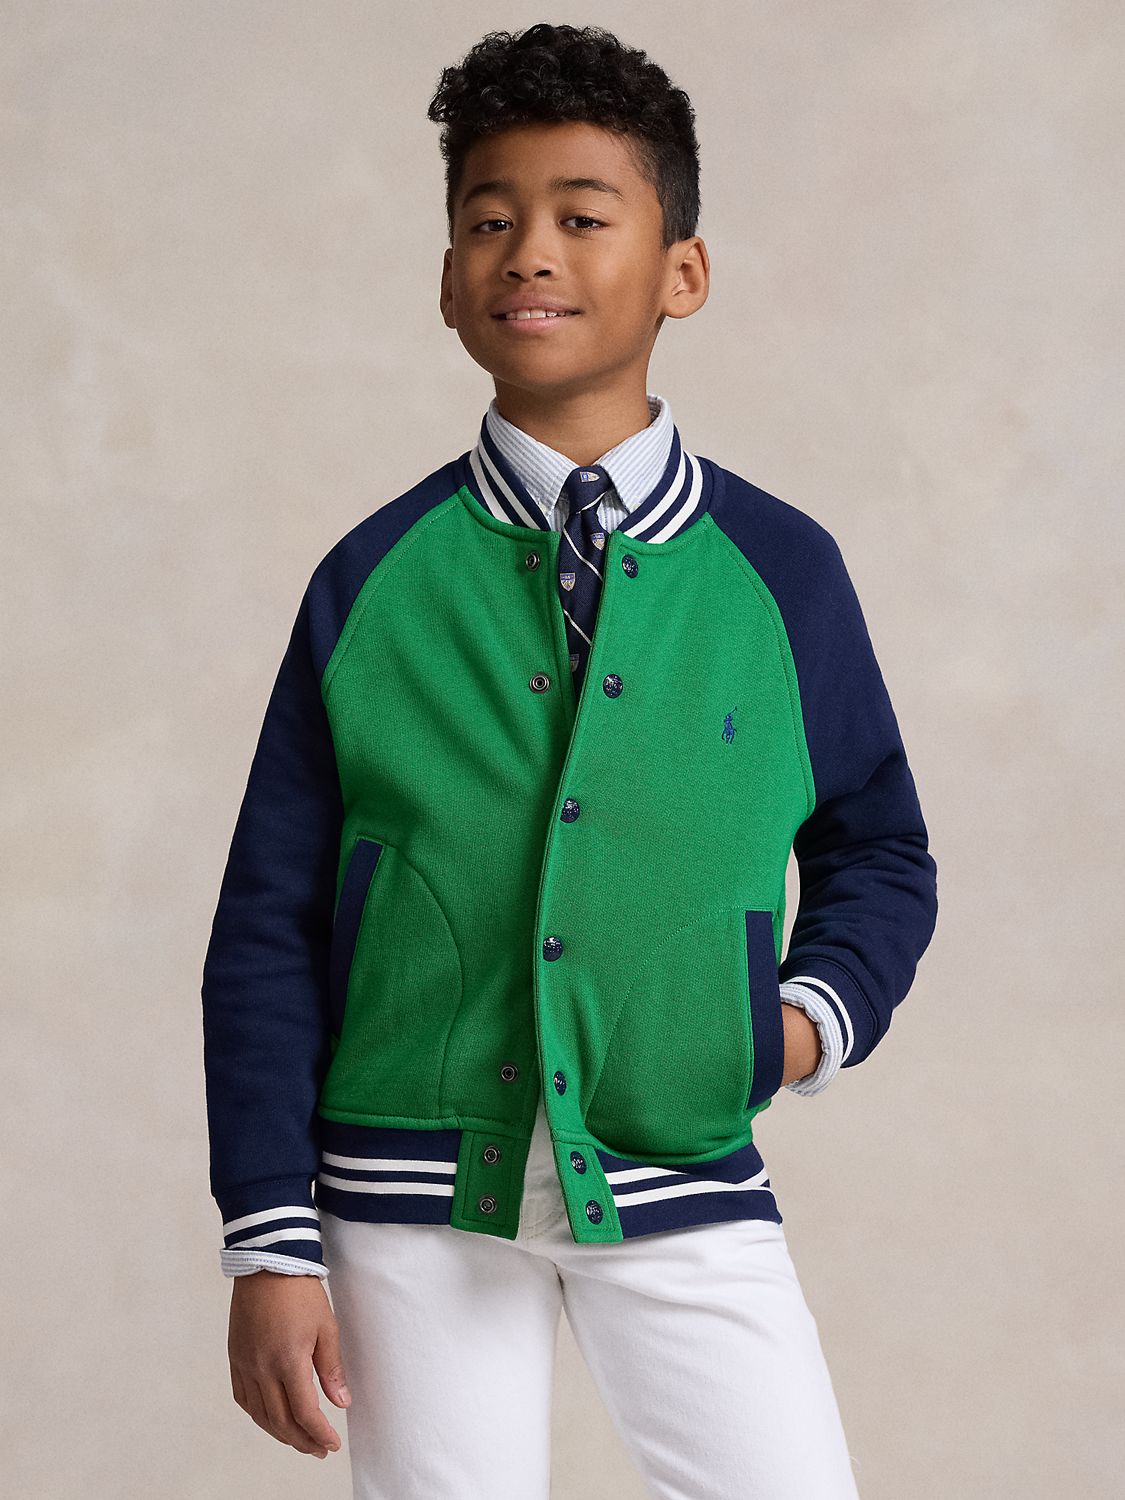 Ralph Lauren Kids' Colour Block Fleece Bomber Jacket, Preppy Green, 3 years